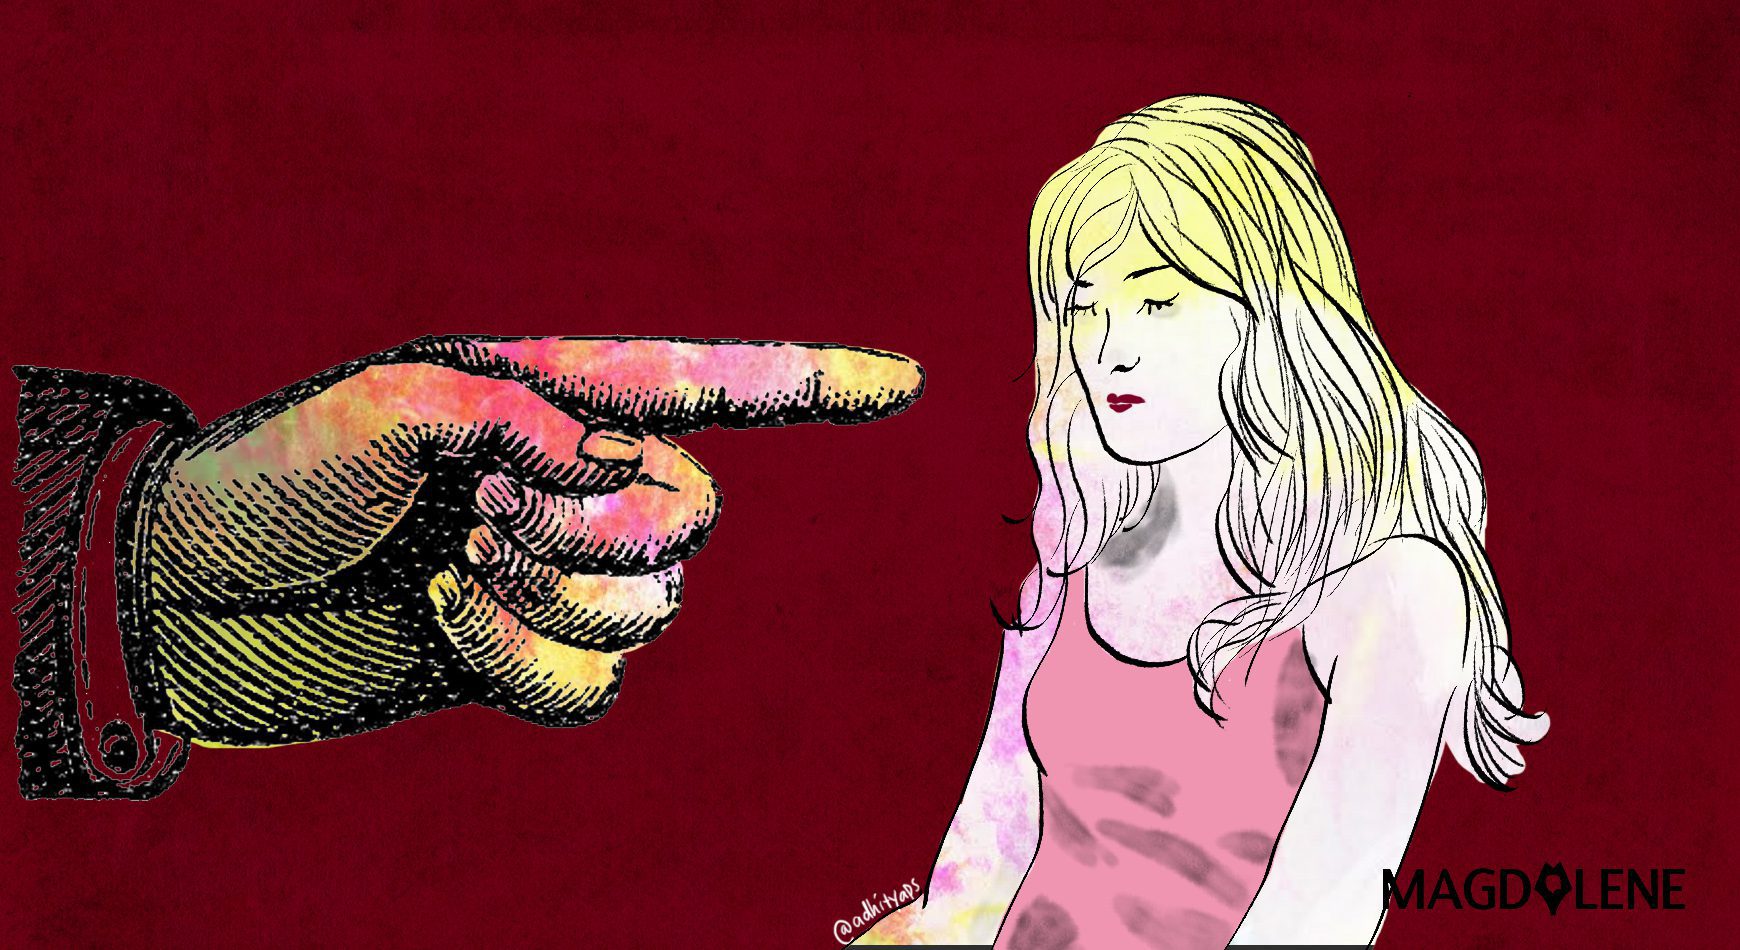 Dari Kasus Sambo Hingga Mario Dandy: Bukti Sindrom ‘Blame the Woman’ Merajalela